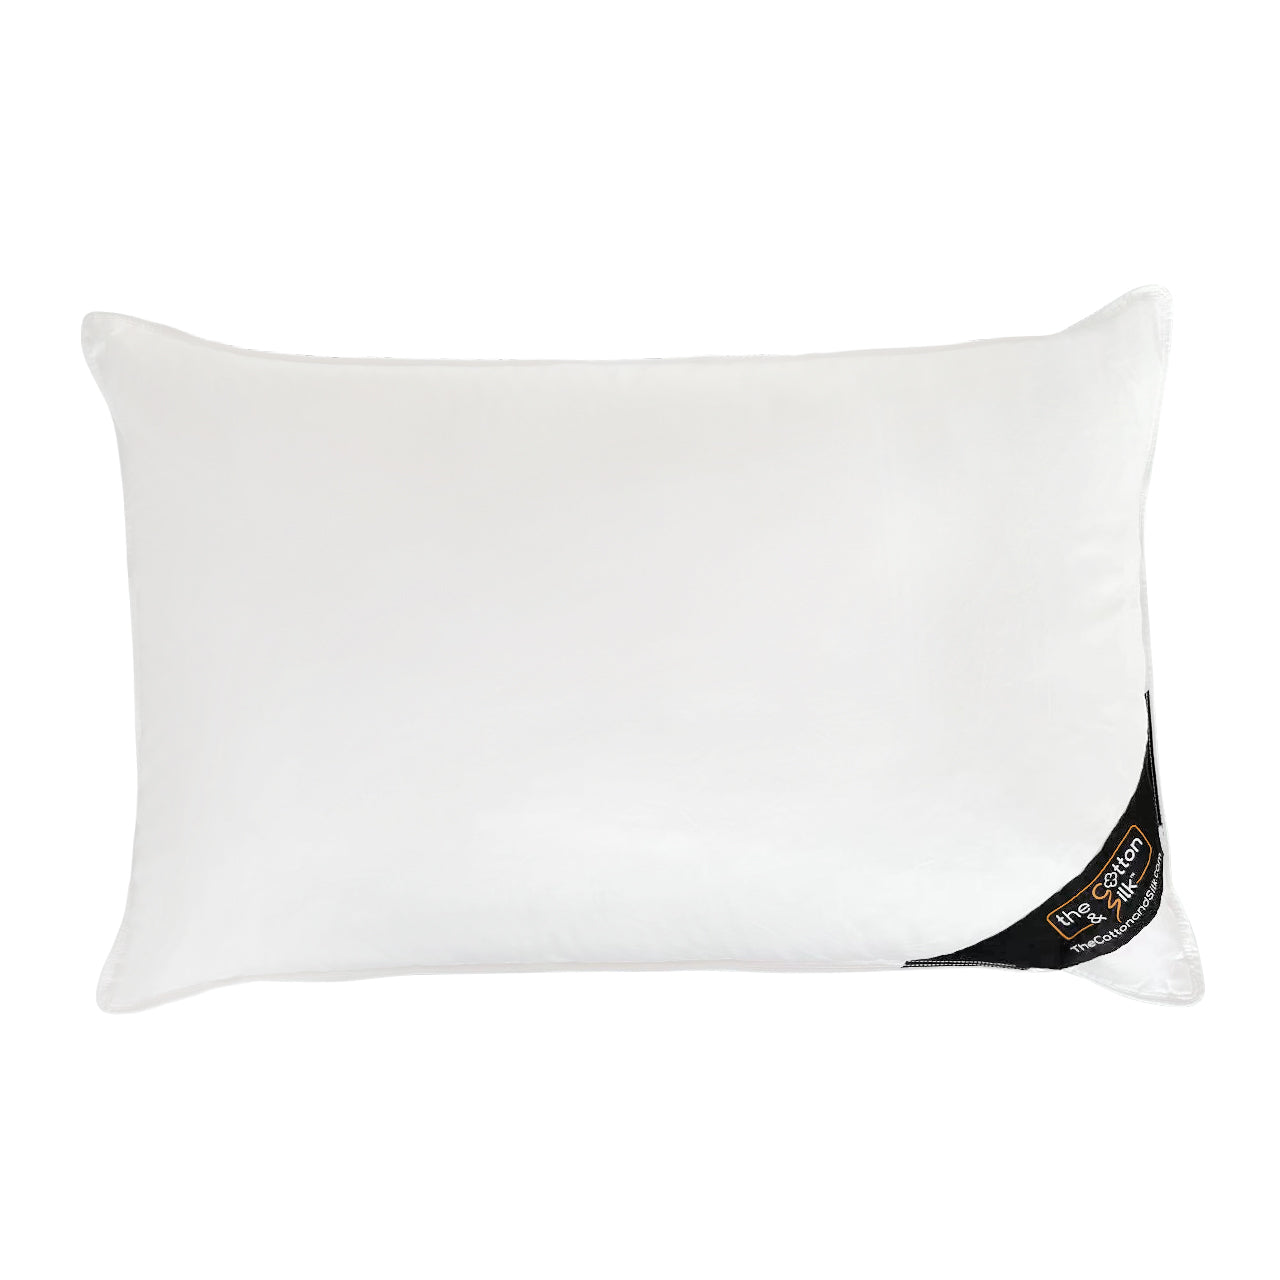 Medium Feather Pillow Insert | Beddy's